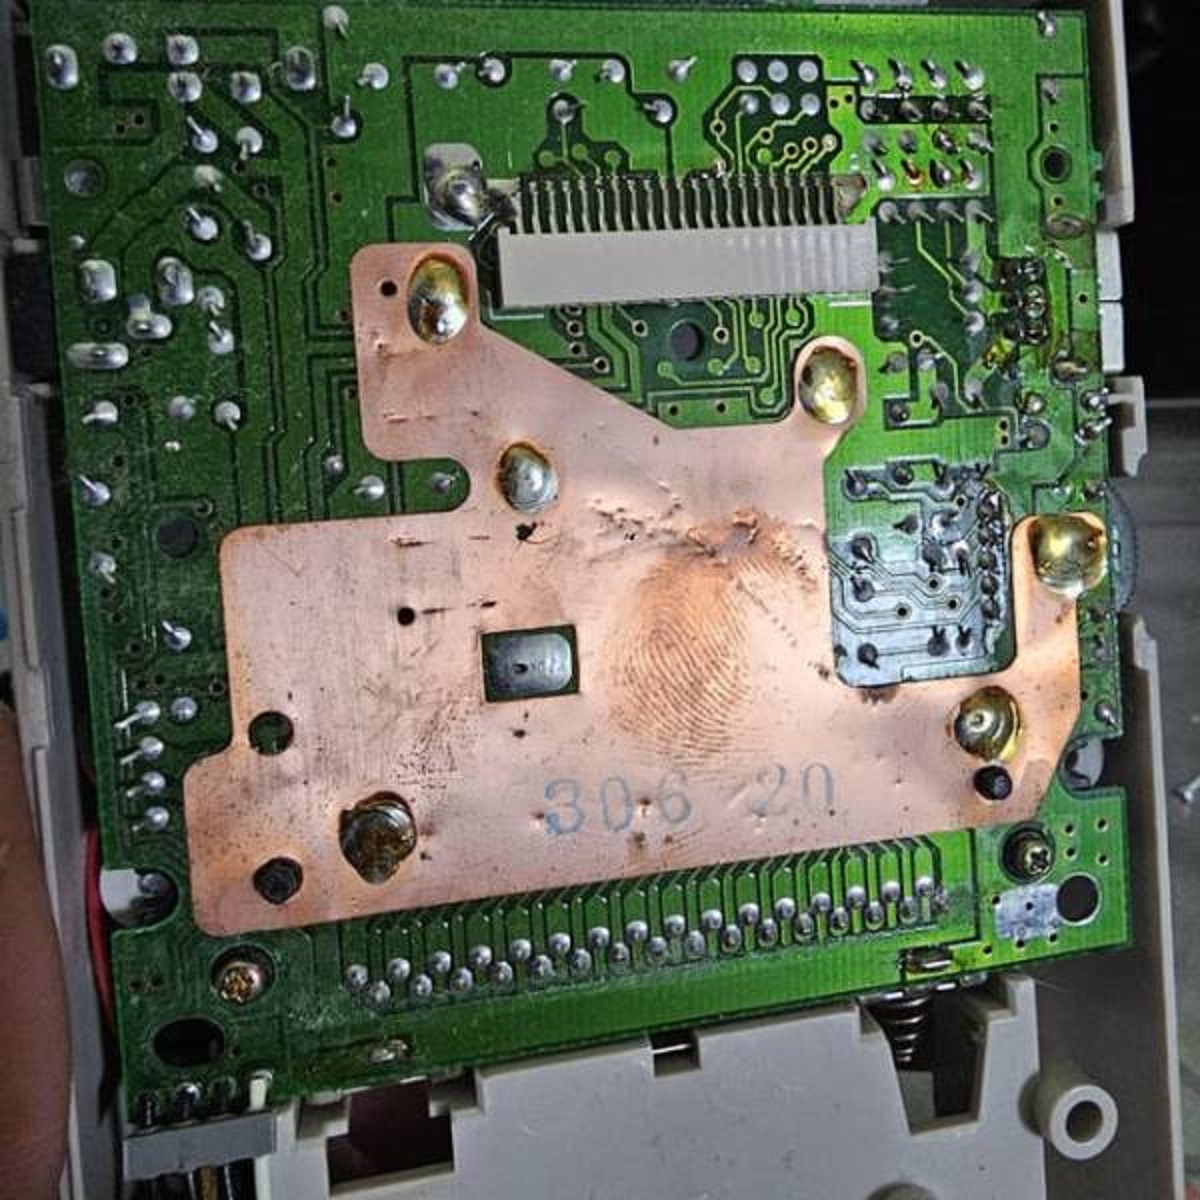 "Assembler fingerprint found inside Nintendo DMG-01."